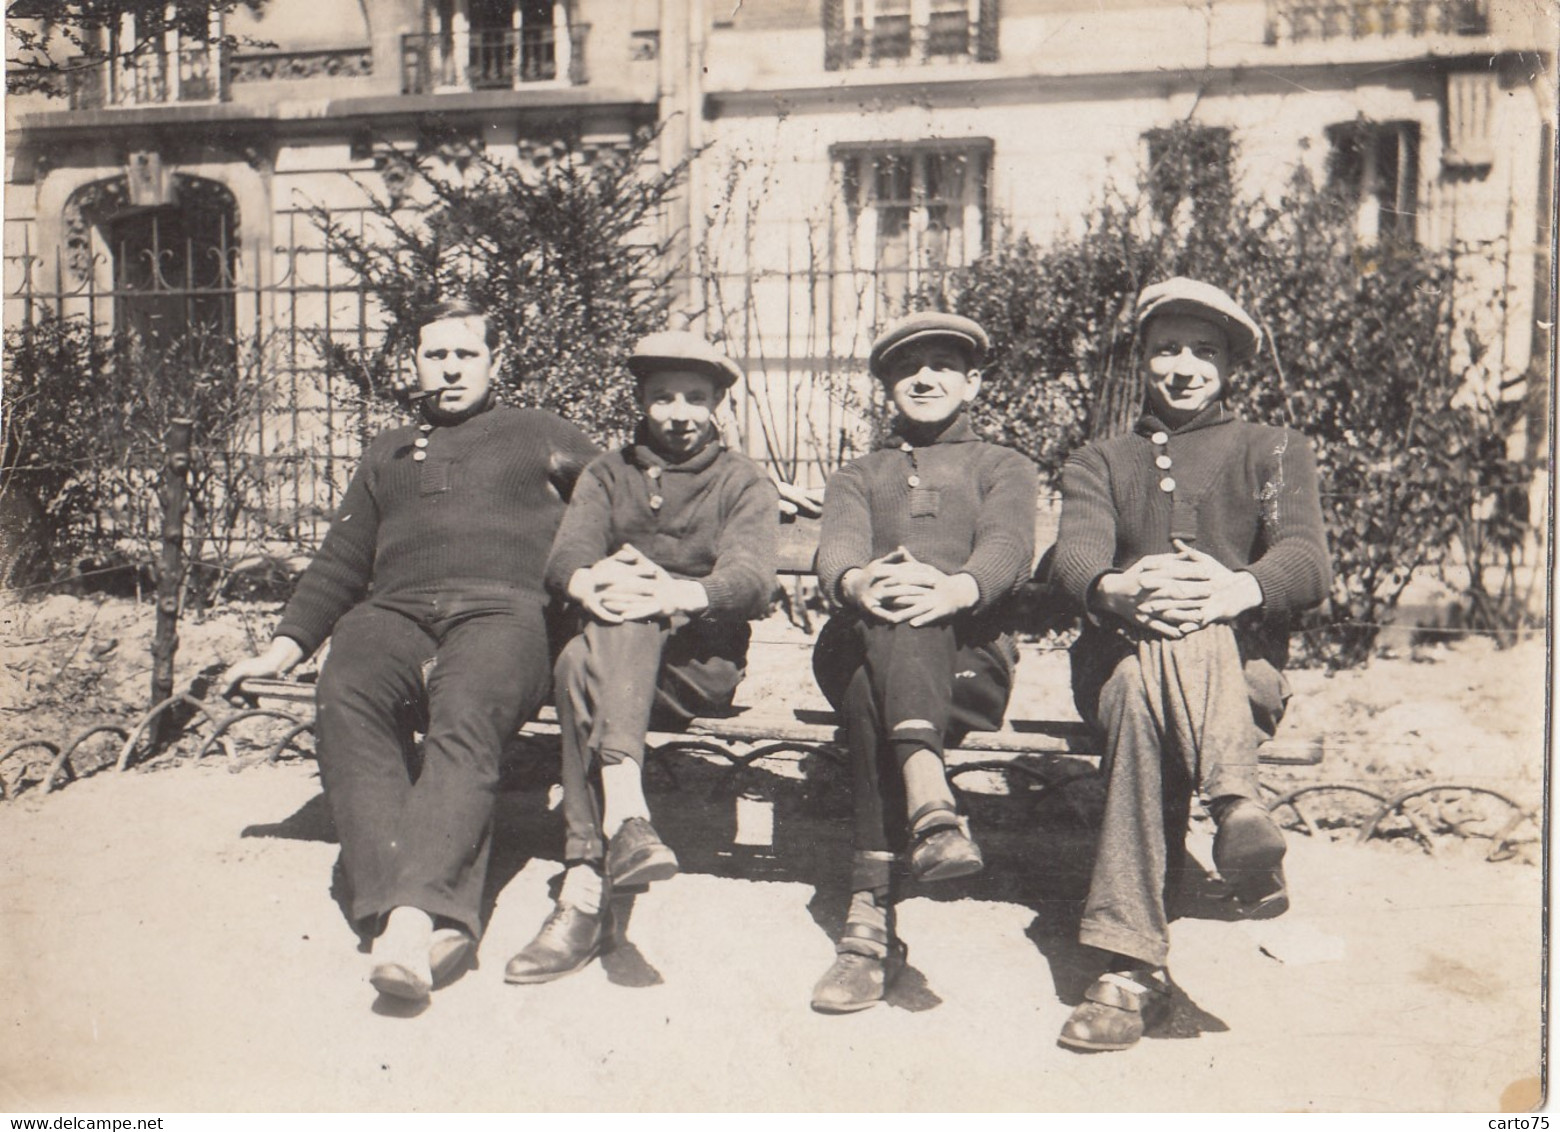 Photographie - 4 Hommes Assis Sur Un Banc - Parc Paris ? - Mode - Années 1930 - Photographie